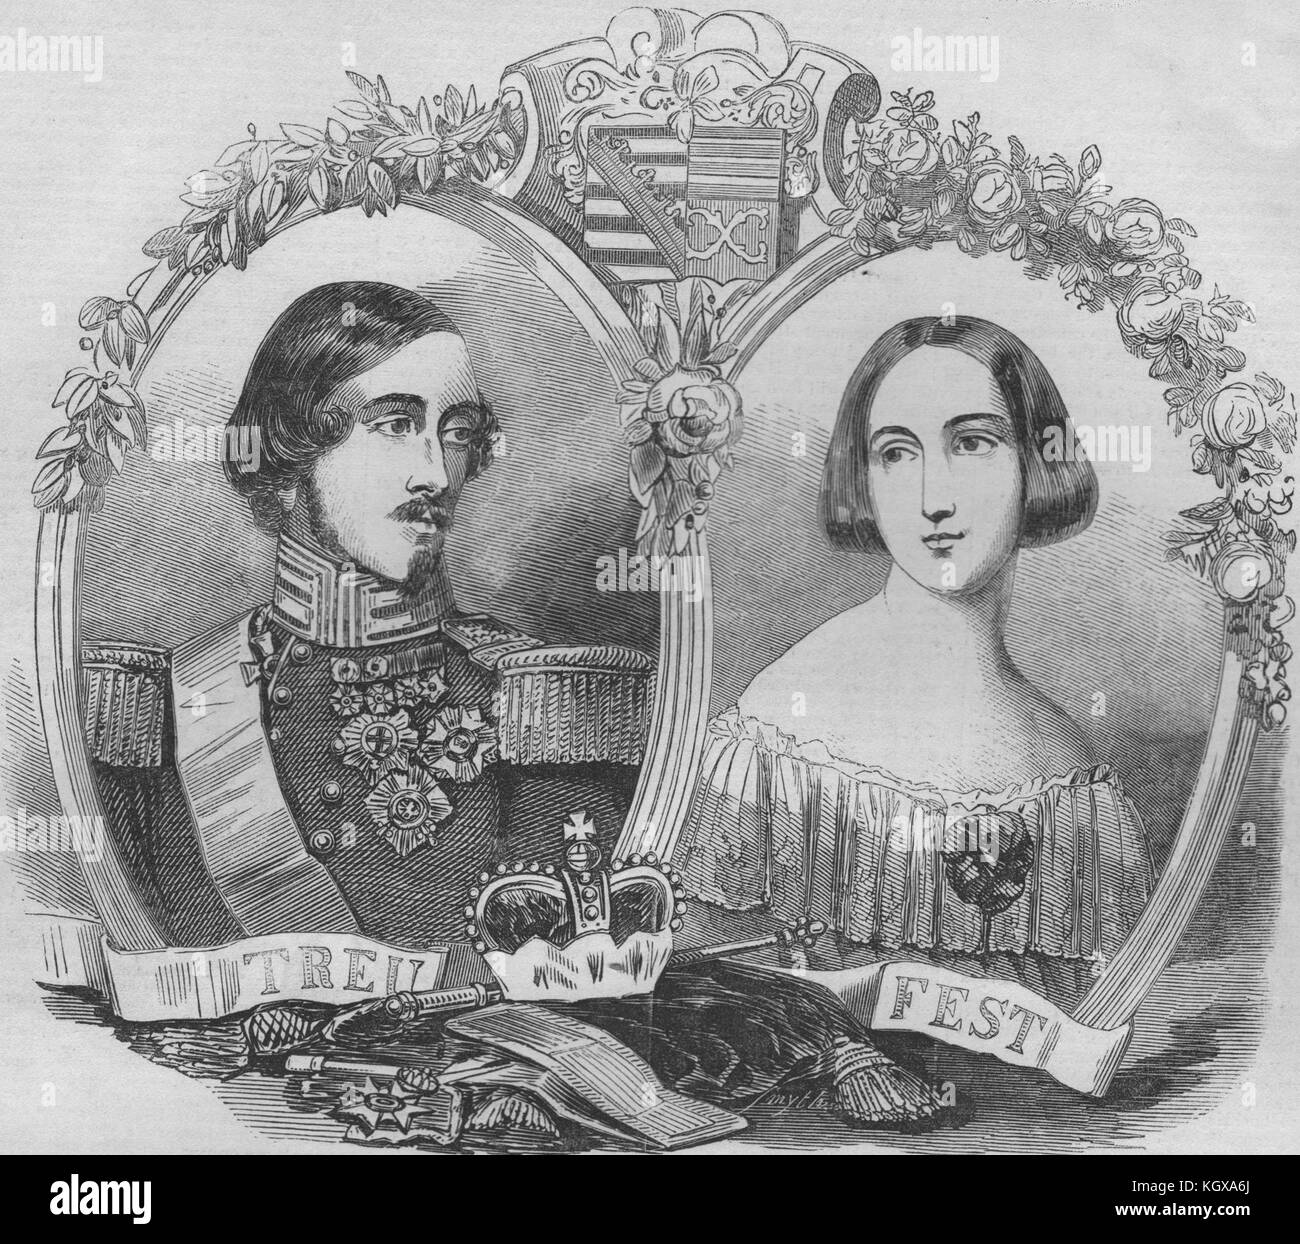 El campeón reinante del Duque y Duquesa de Sajonia-Coburgo-Gotha. Turingia 1845. El Illustrated London News Foto de stock